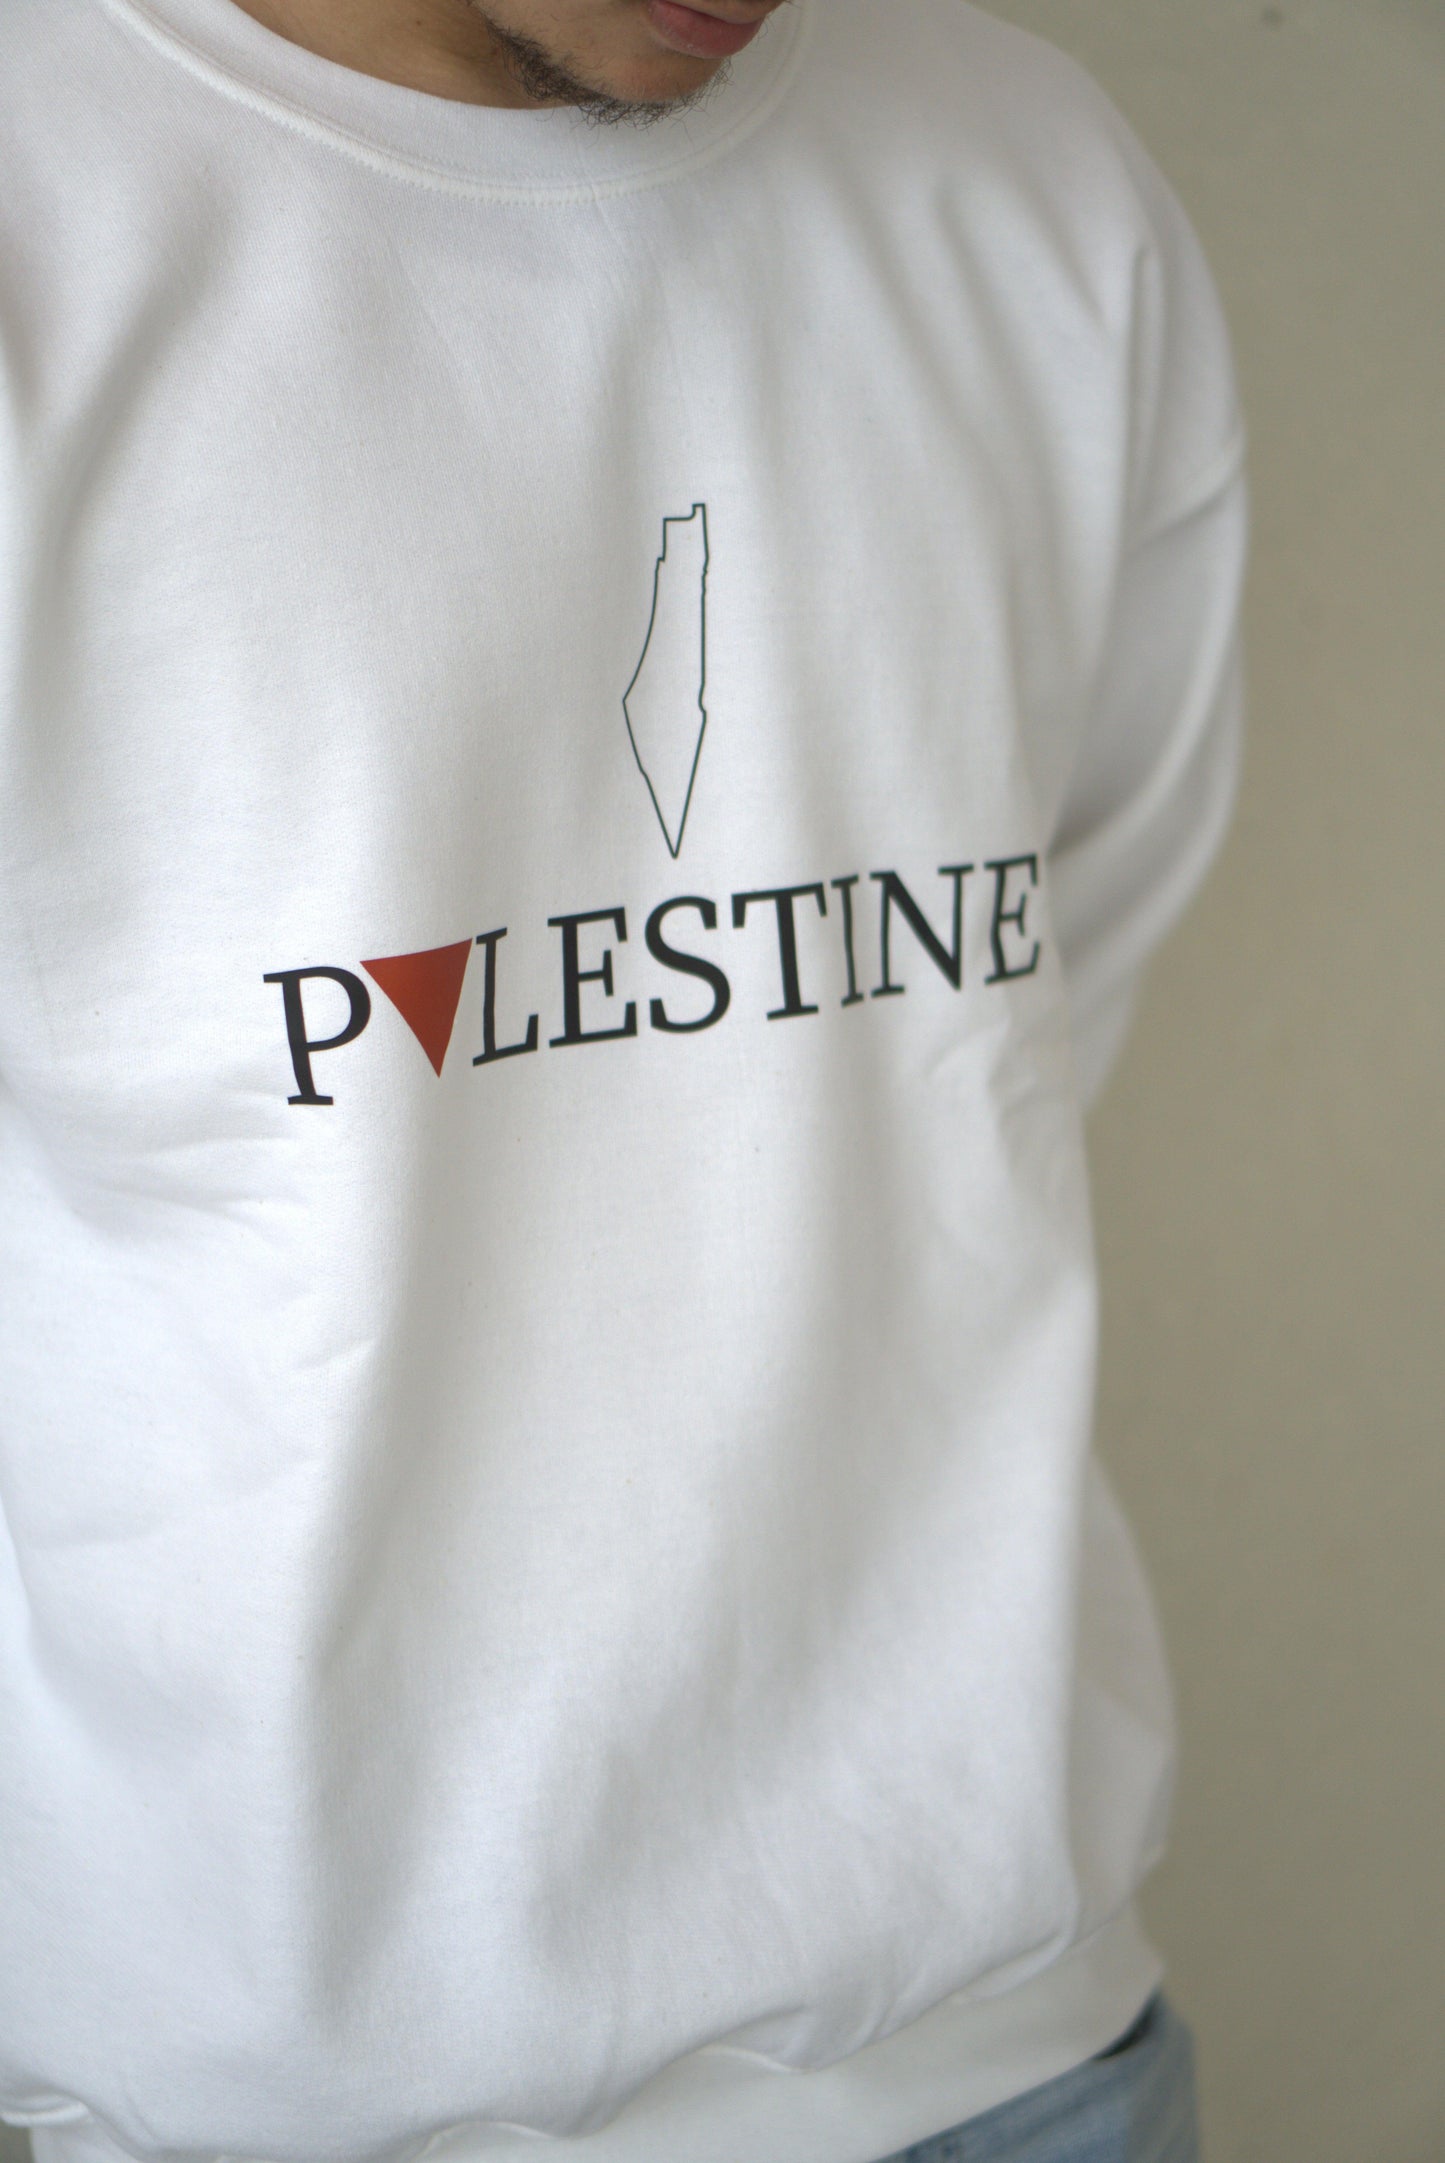 Palestine Sweatshirt - The Olive Oath